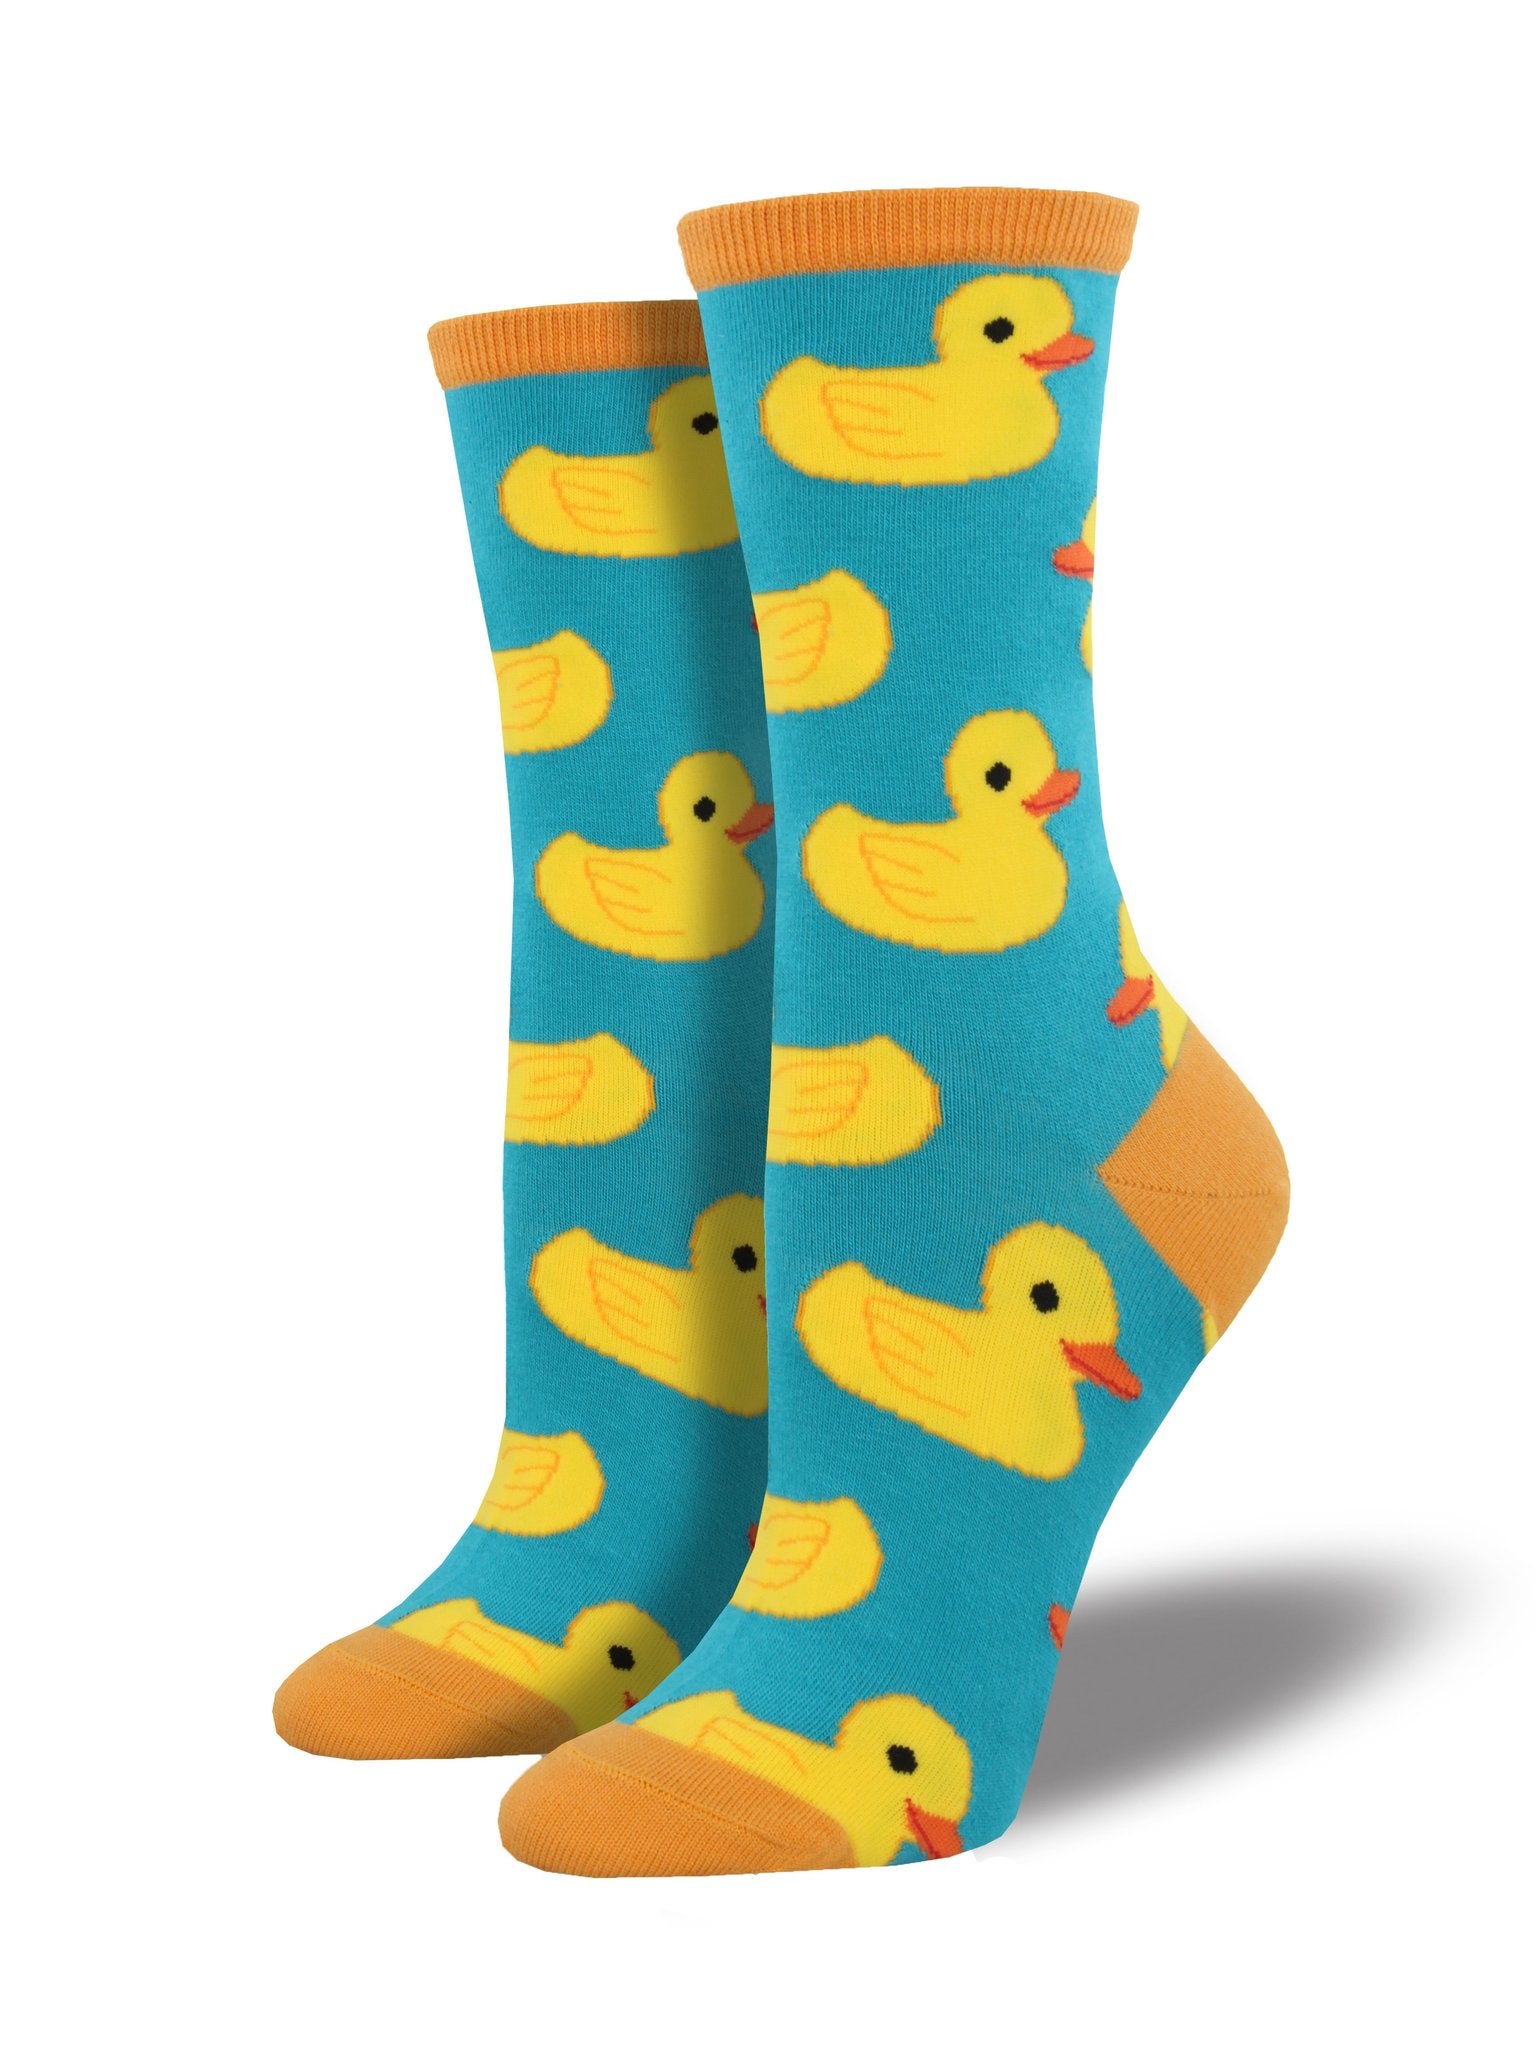 Rubber Ducky Socks